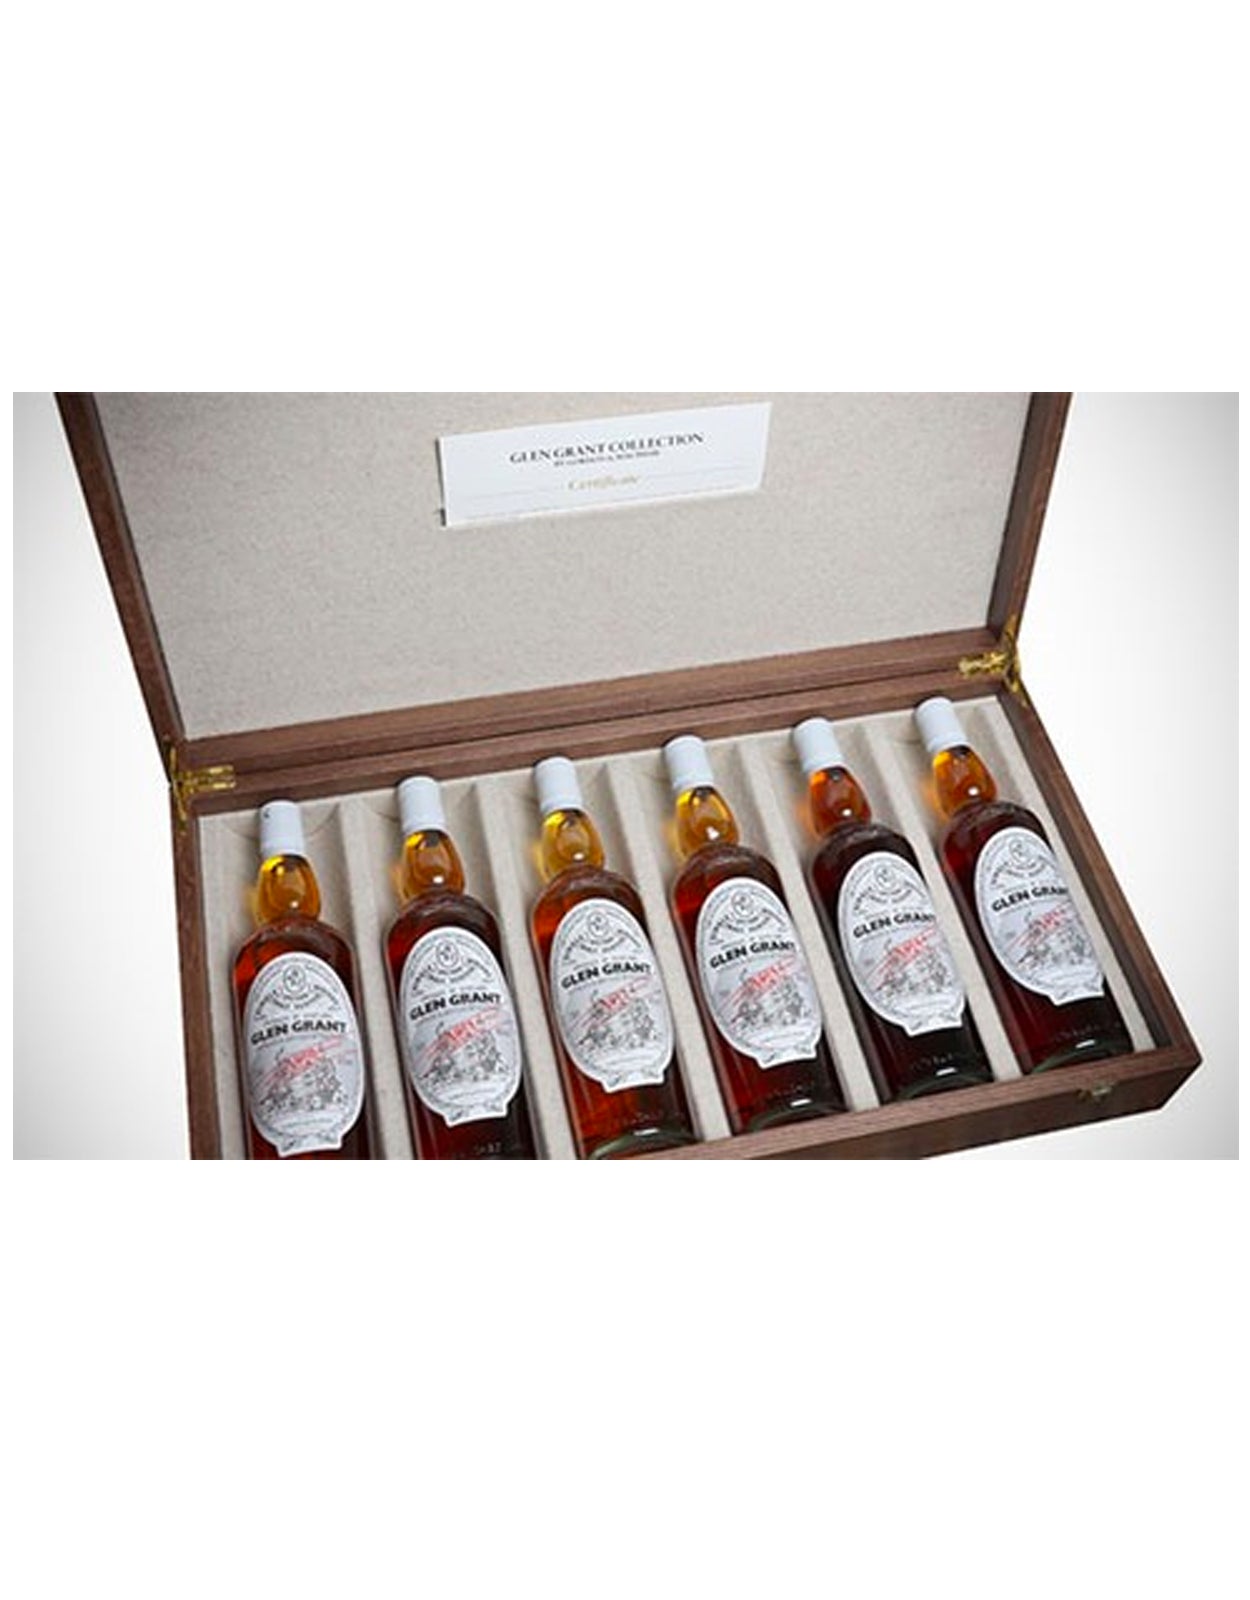 Gordon & Macphail Glen Grant Collection - 6 Bottles